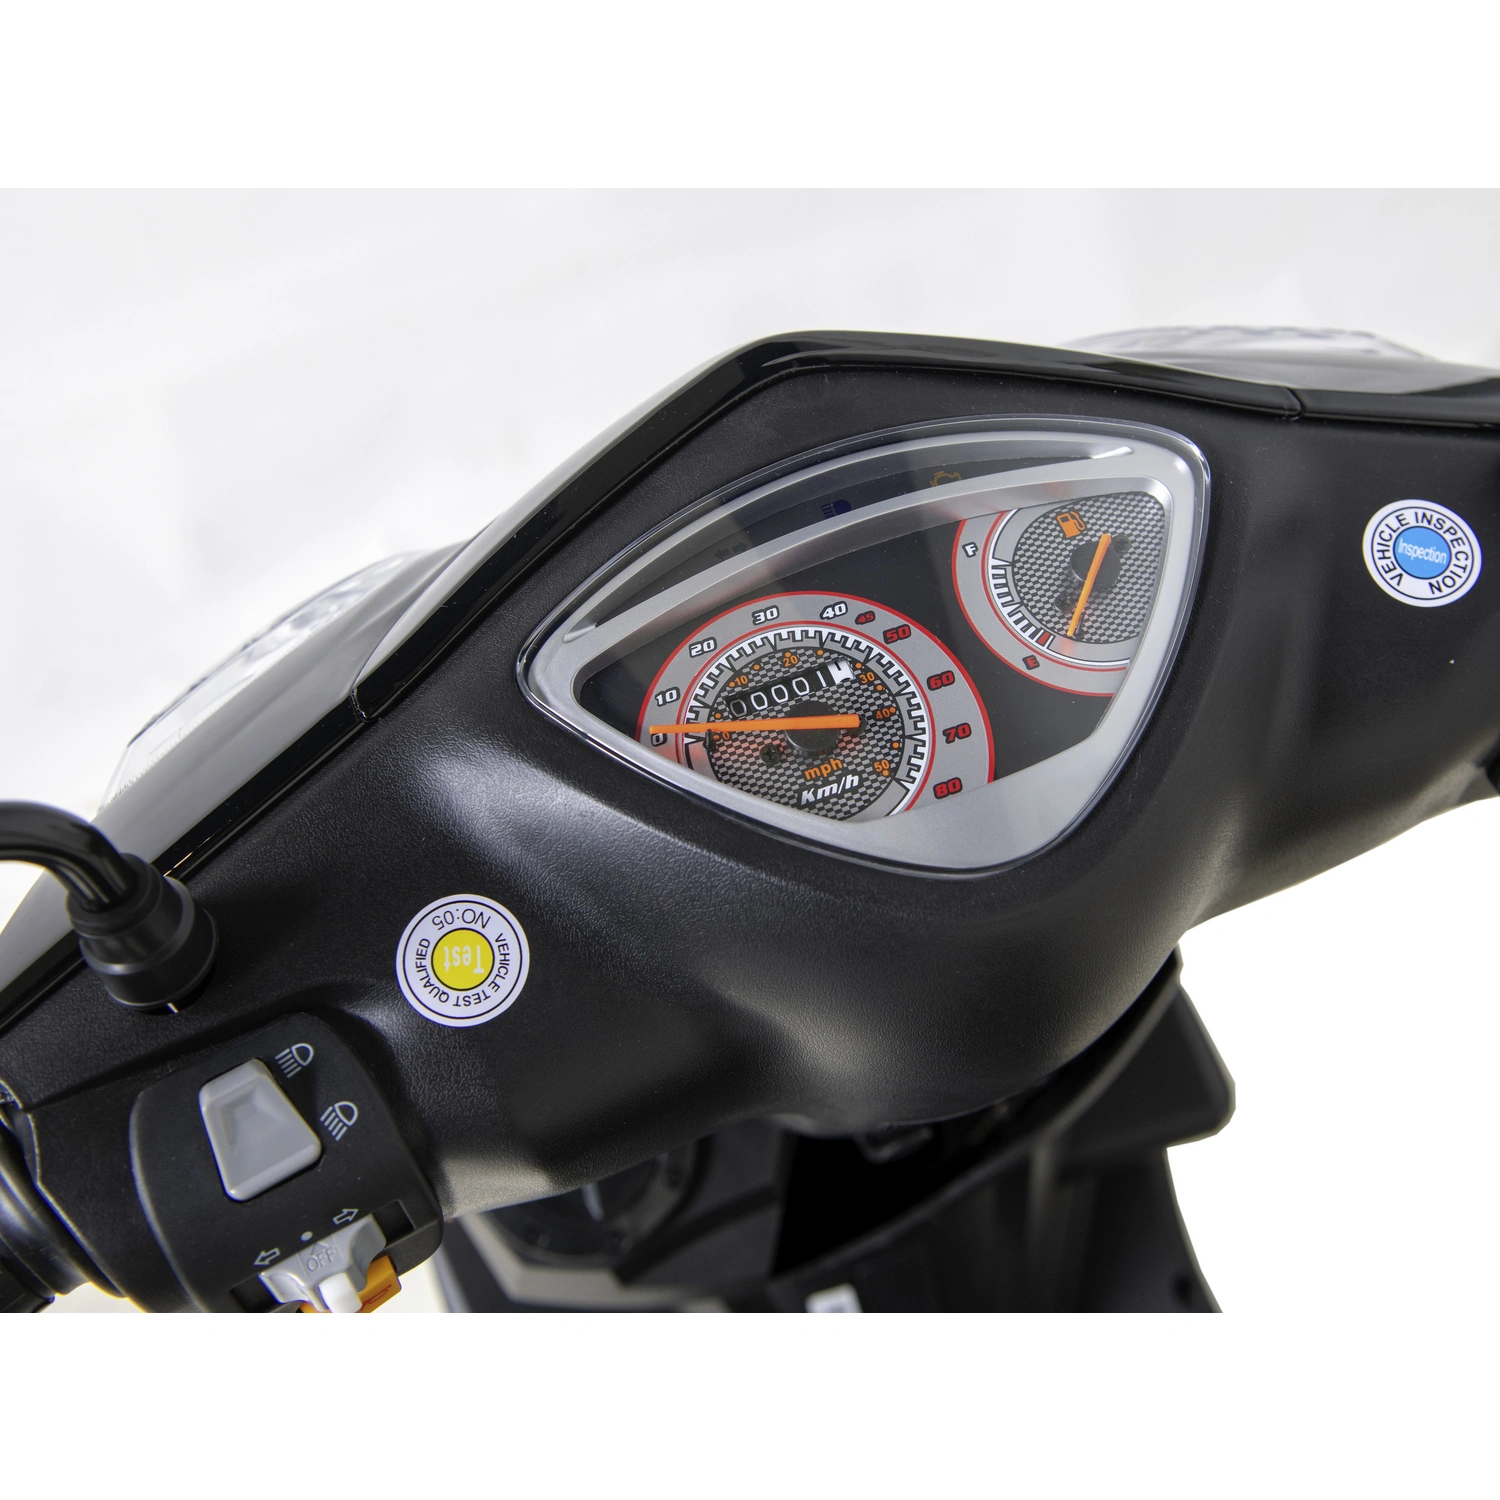 GT UNION Motorroller »GT3«, 50 cm³, 45 km/h, Euro 5